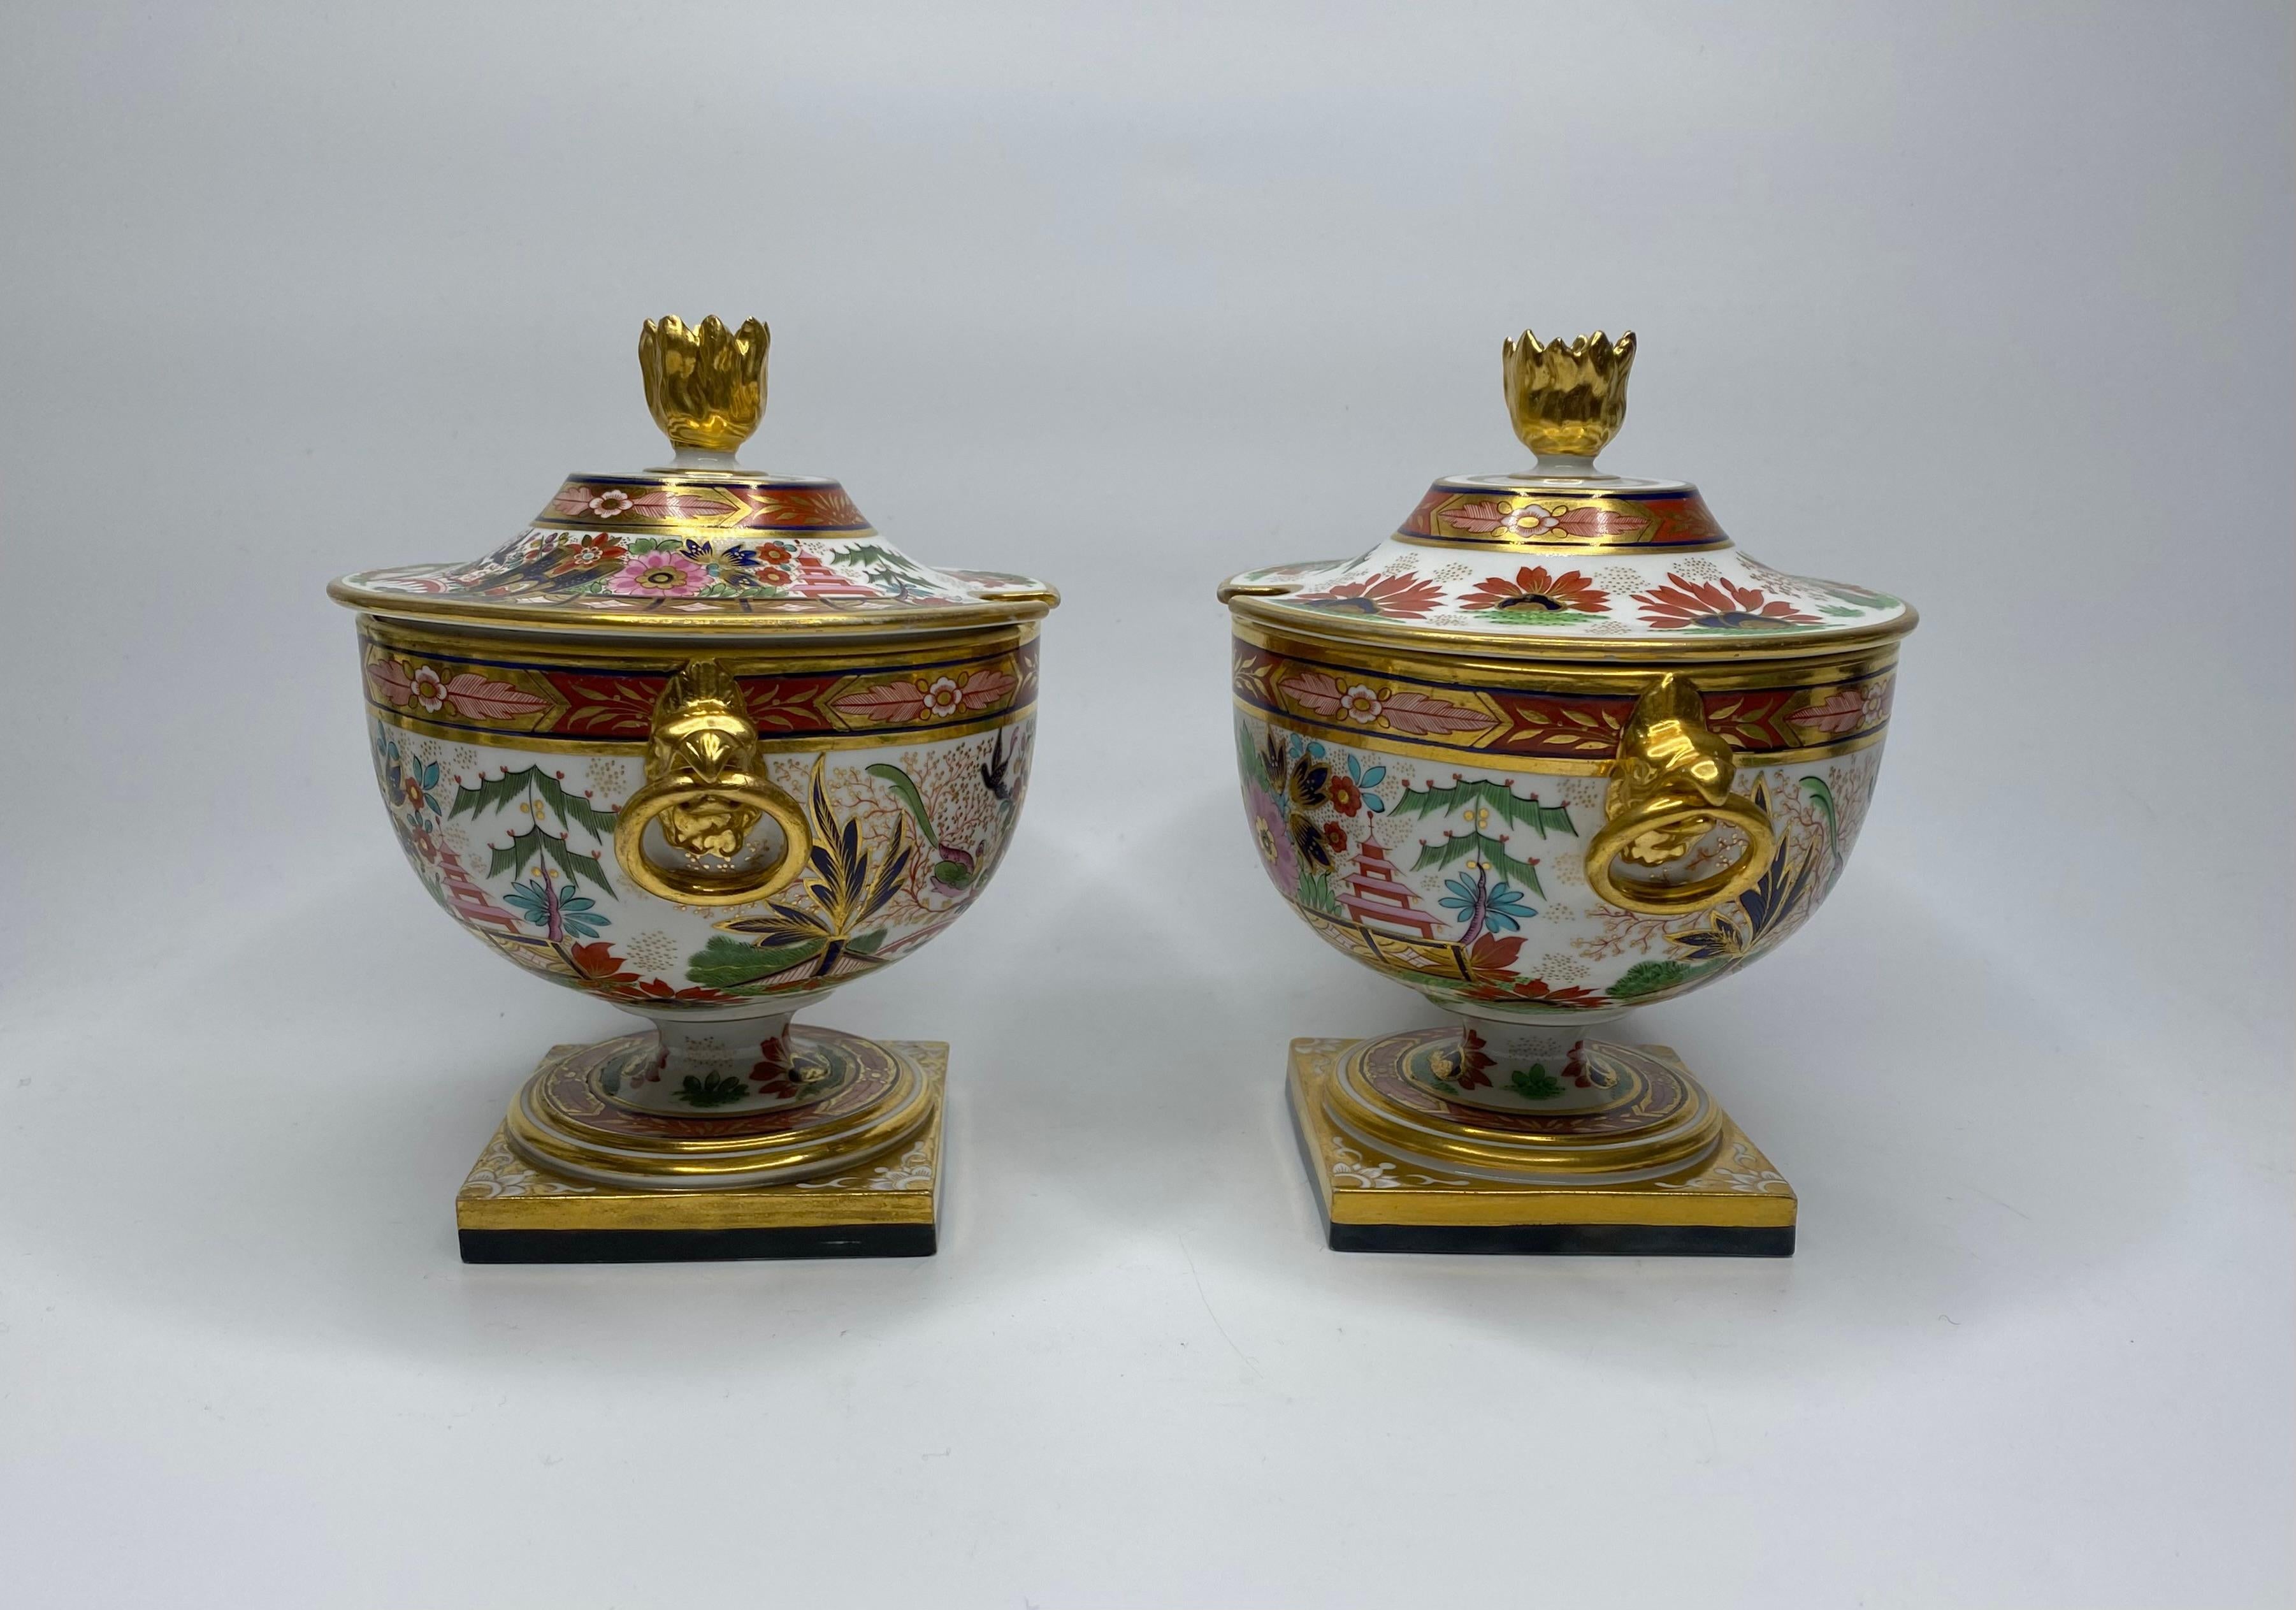 Une paire exceptionnellement fine de soupières à sauce en porcelaine de Barr, Sauce et Barr Worcester, et couvercles, vers 1810.
Les deux soupières en forme d'urne sont moulées avec deux poignées en forme de masque d'aigle doré, tenant des anneaux